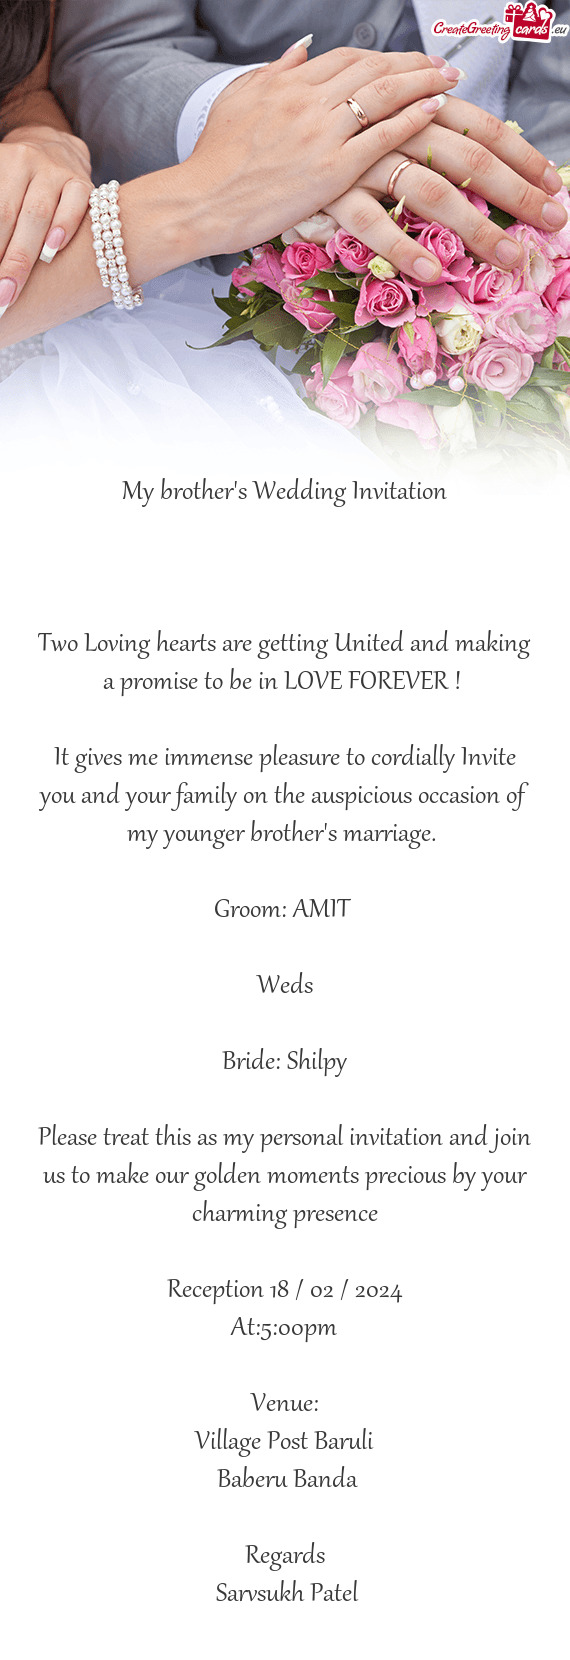 Bride: Shilpy